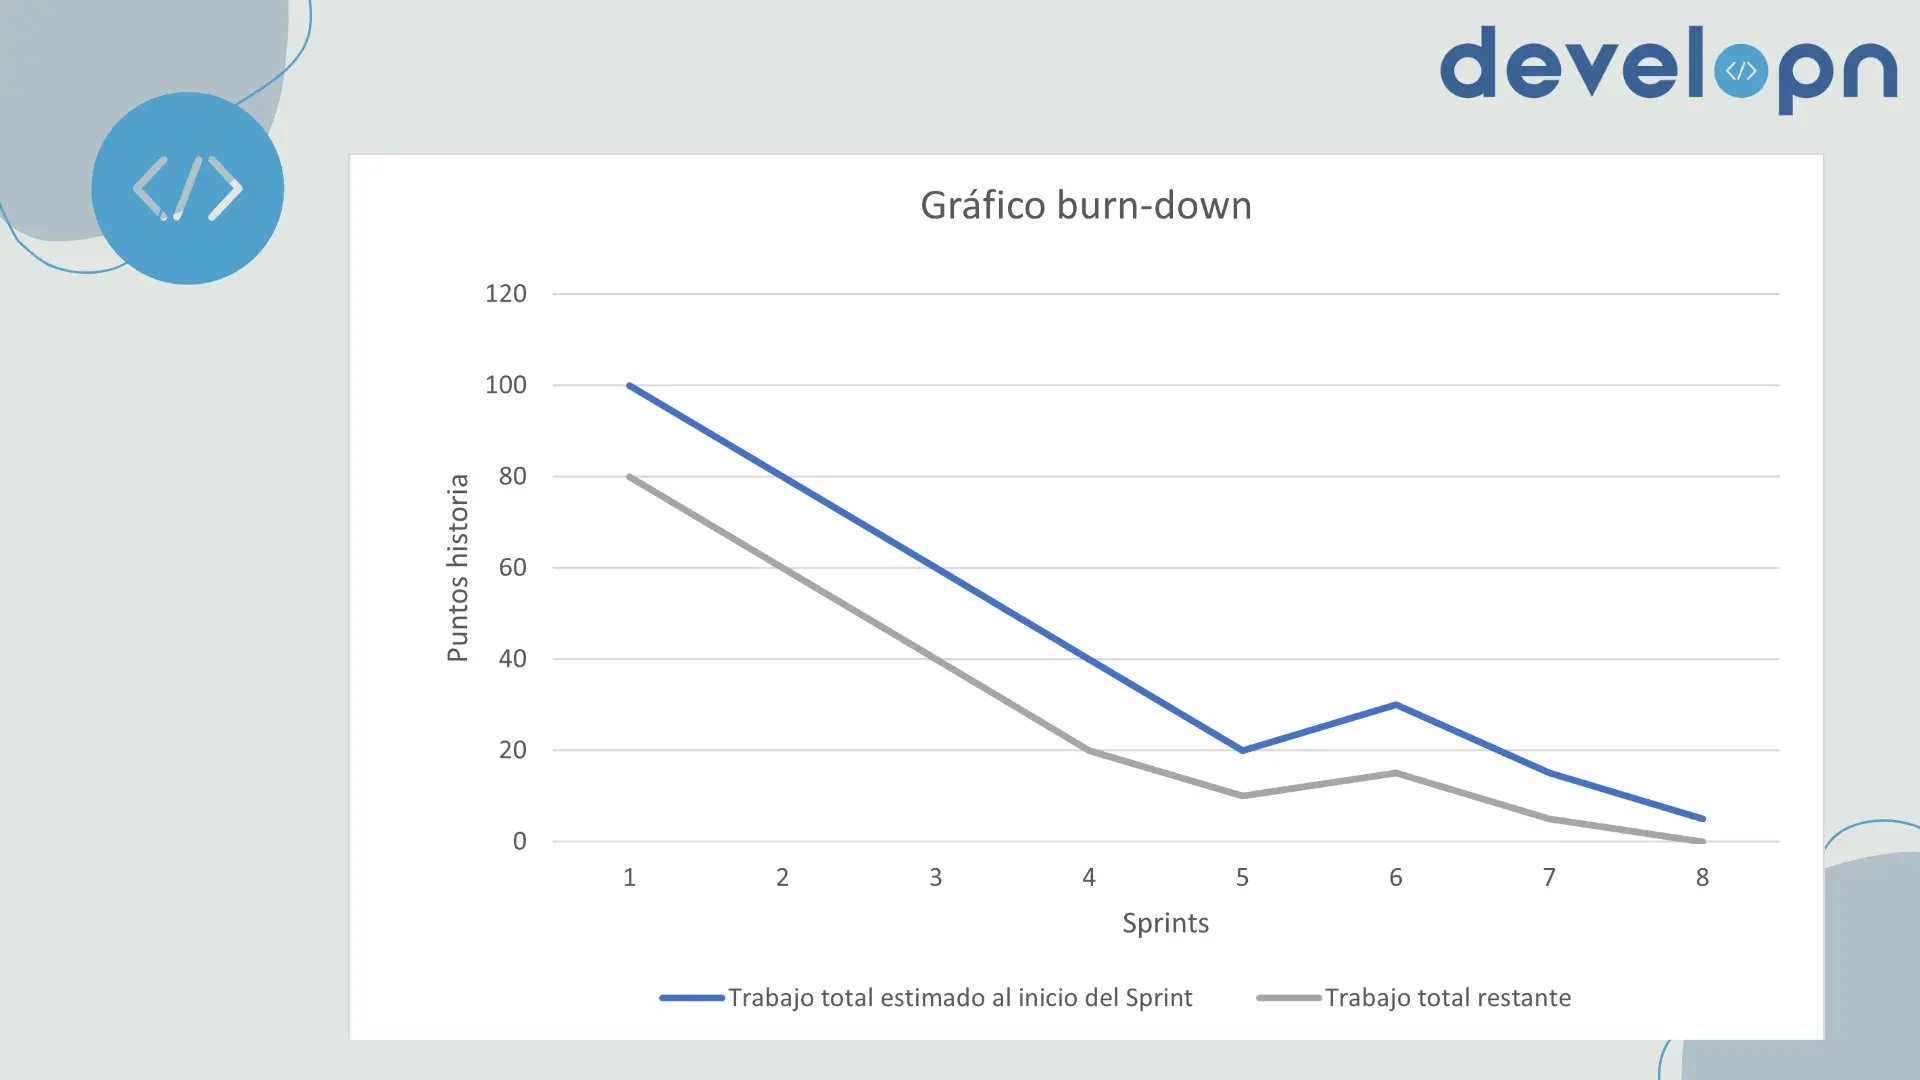 Gráfico de quemado o burn-down